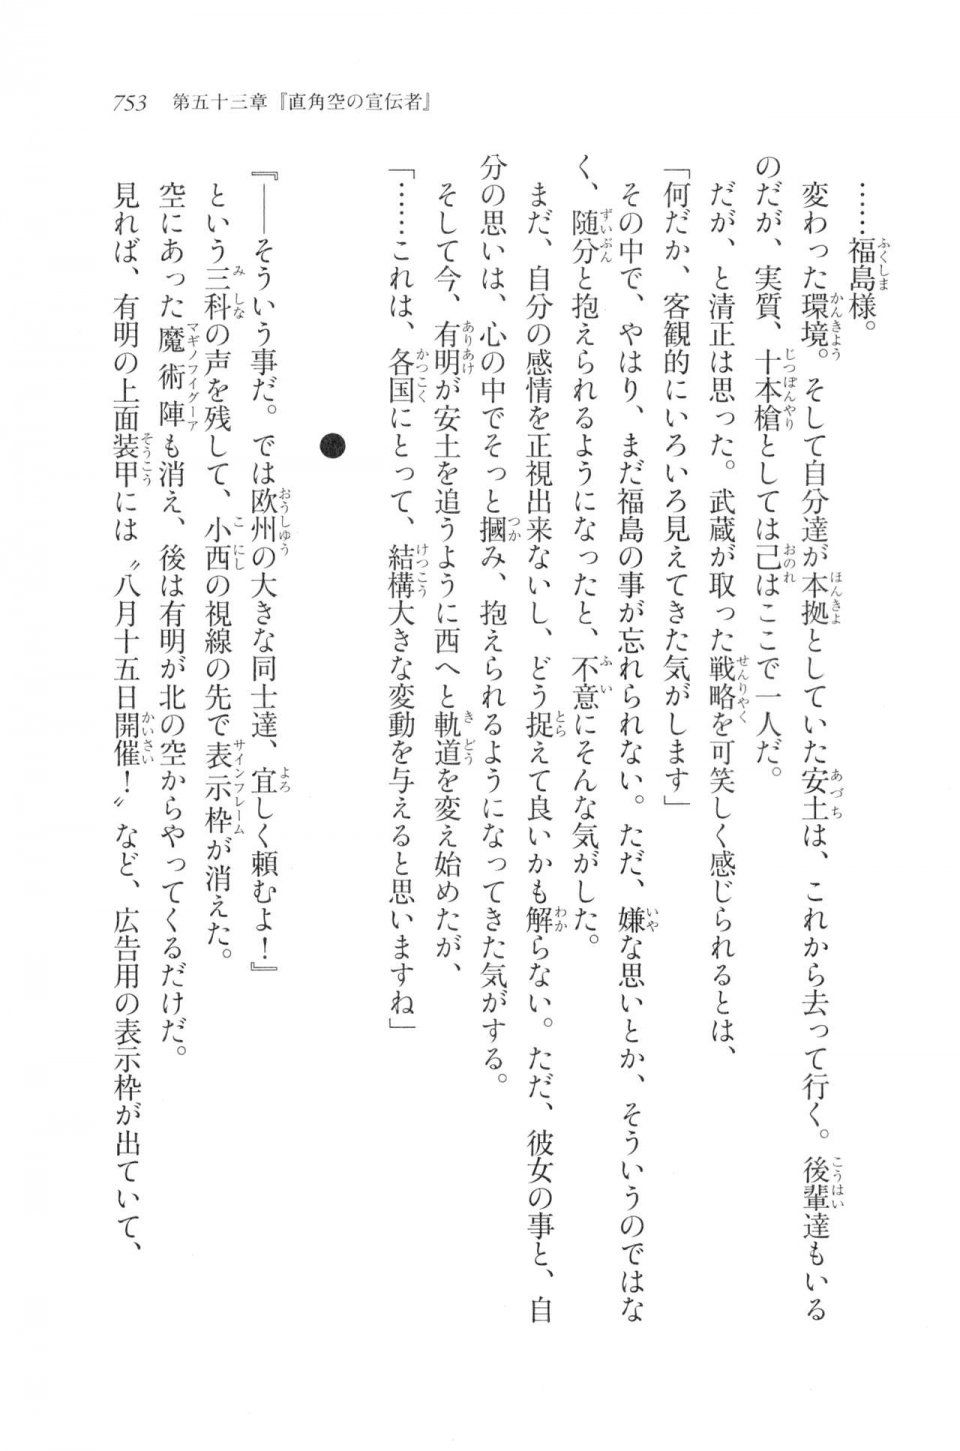 Kyoukai Senjou no Horizon LN Vol 20(8B) - Photo #753